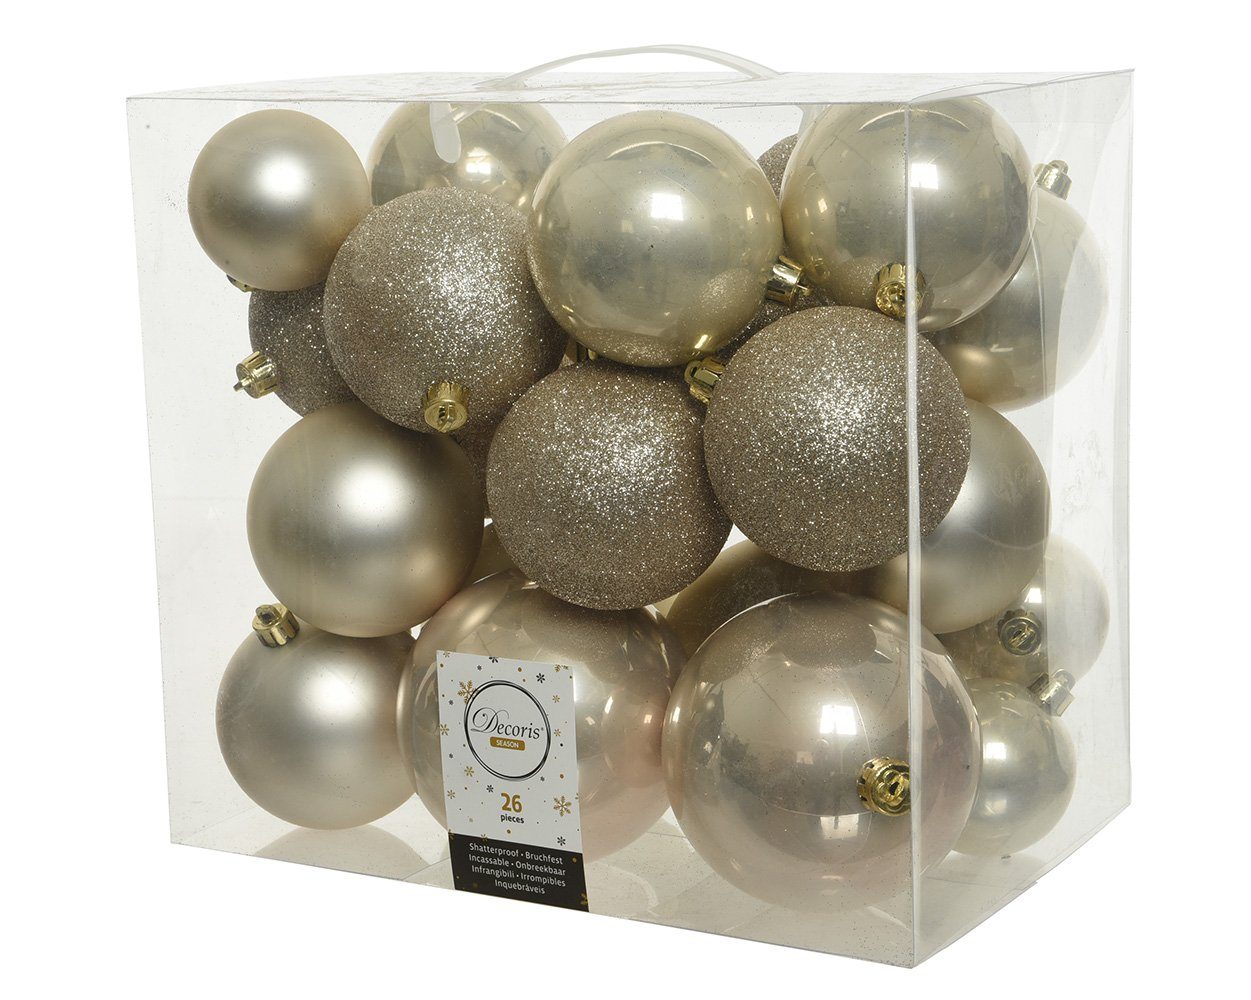 Decoris season decorations Weihnachtsbaumkugel, Weihnachtskugeln Kunststoff Mix 6-10cm perle, 26er Set